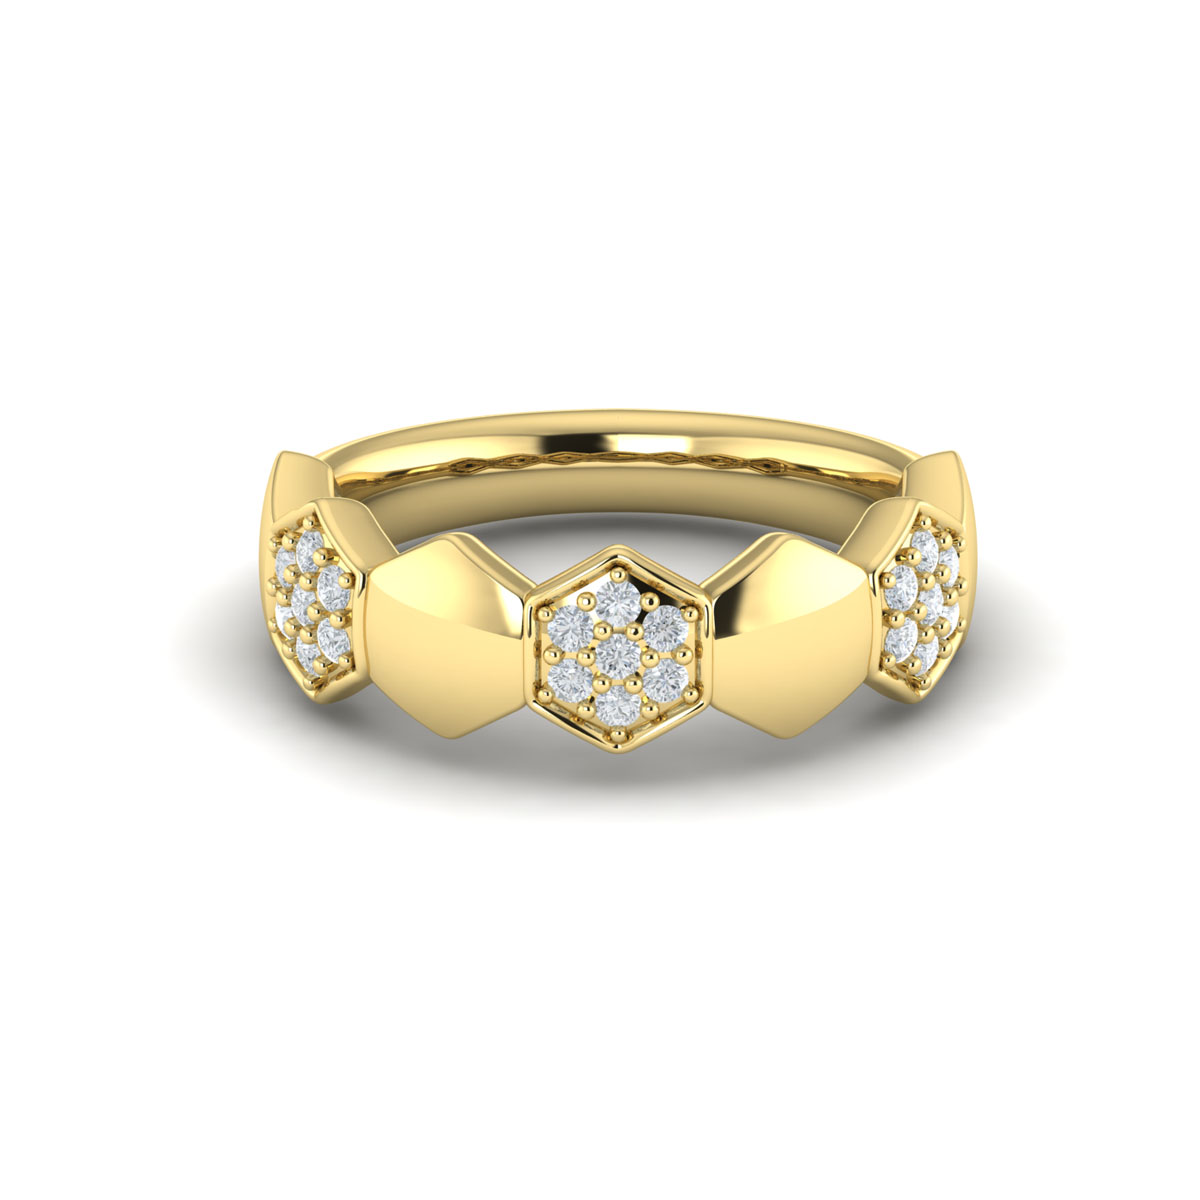 14K YELLOW GOLD HEXAGON DIAMOND FASHION RING SIZE 6.75 WITH 21=0.26TW ROUND G-H VS2-SI1 DIAMONDS   (5.54 GRAMS)